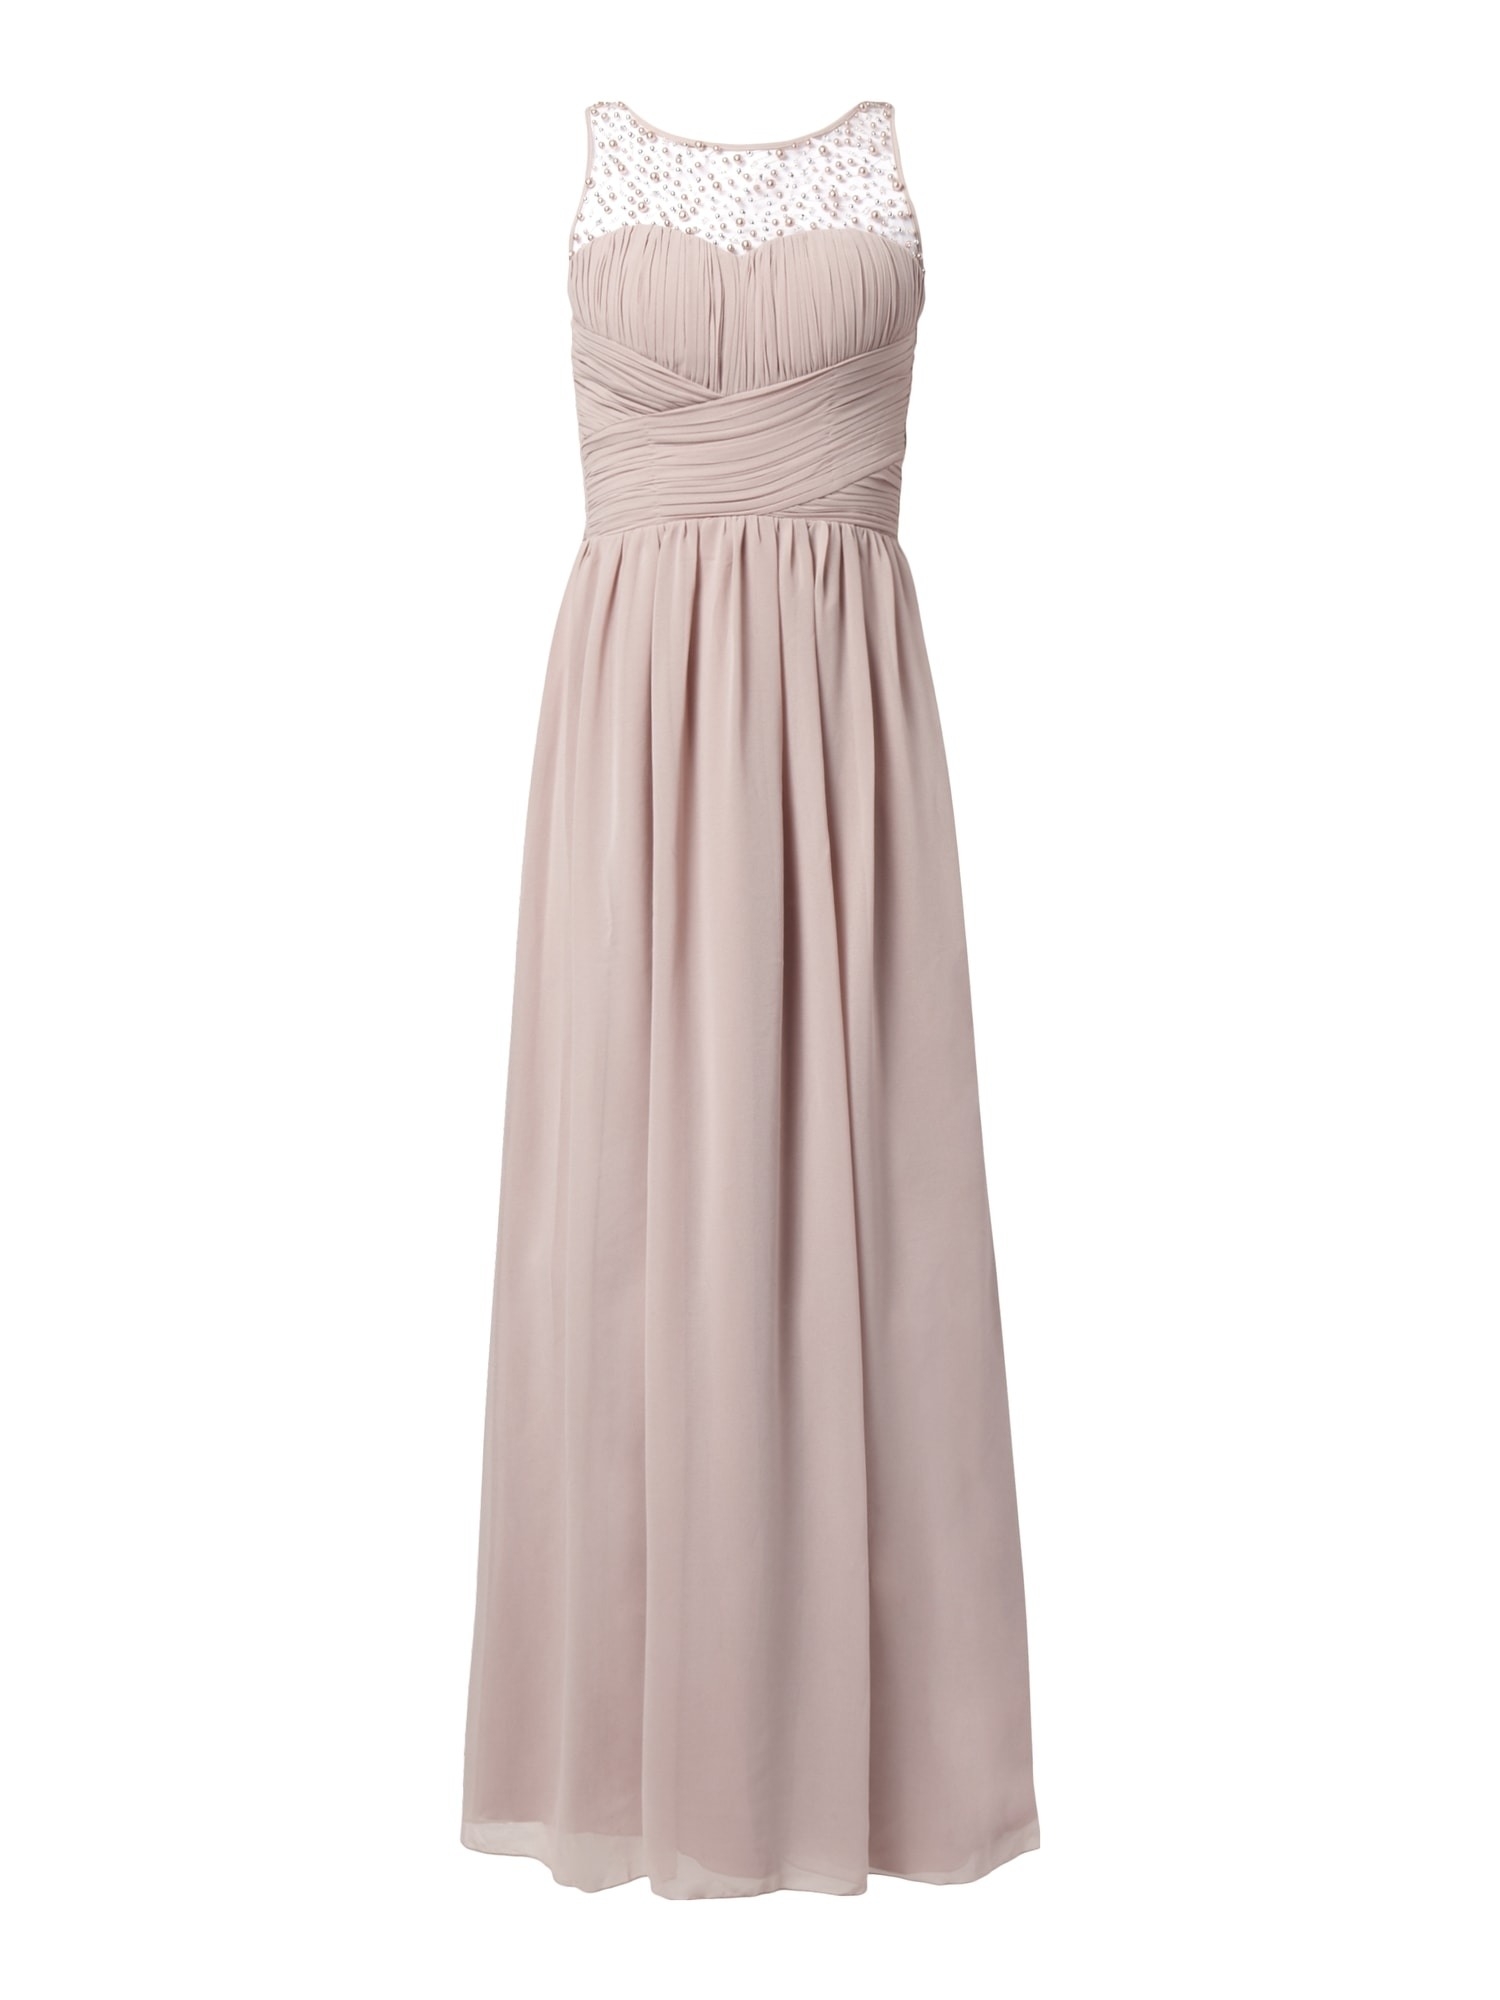 10 Top Kleid Altrosa Spitze Spezialgebiet Luxus Kleid Altrosa Spitze Ärmel